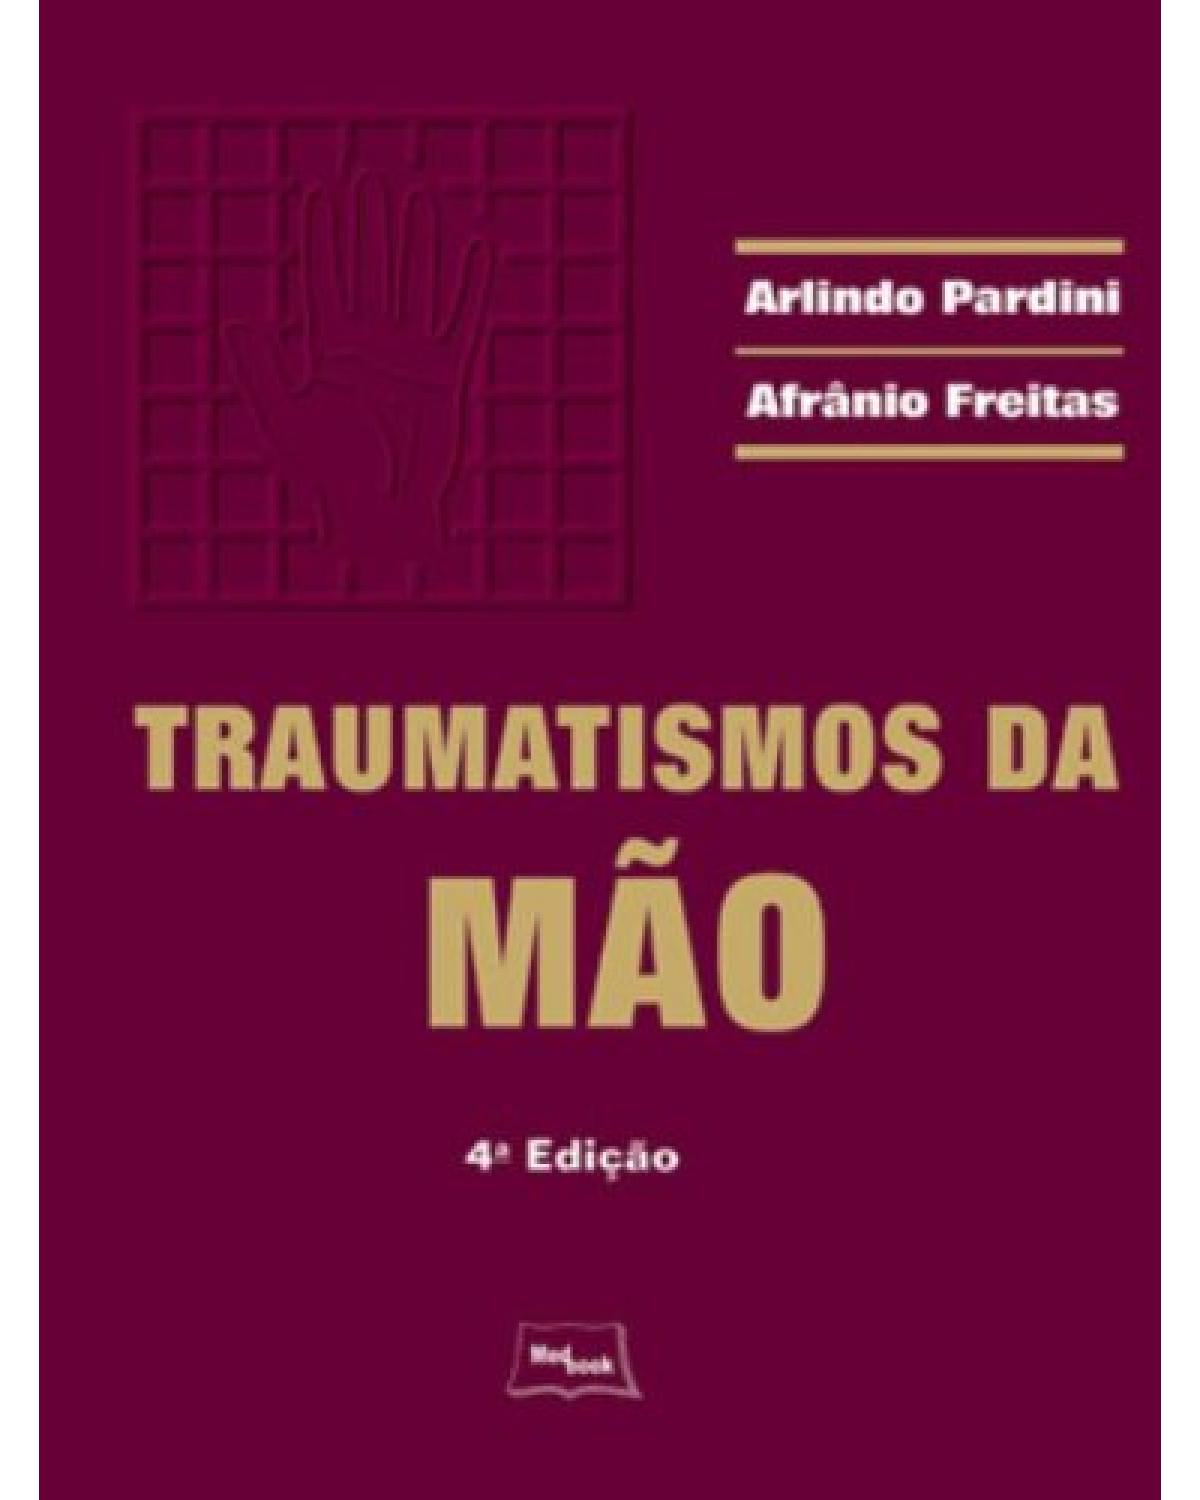 Traumatismos da mão - 4ª Edição | 2008